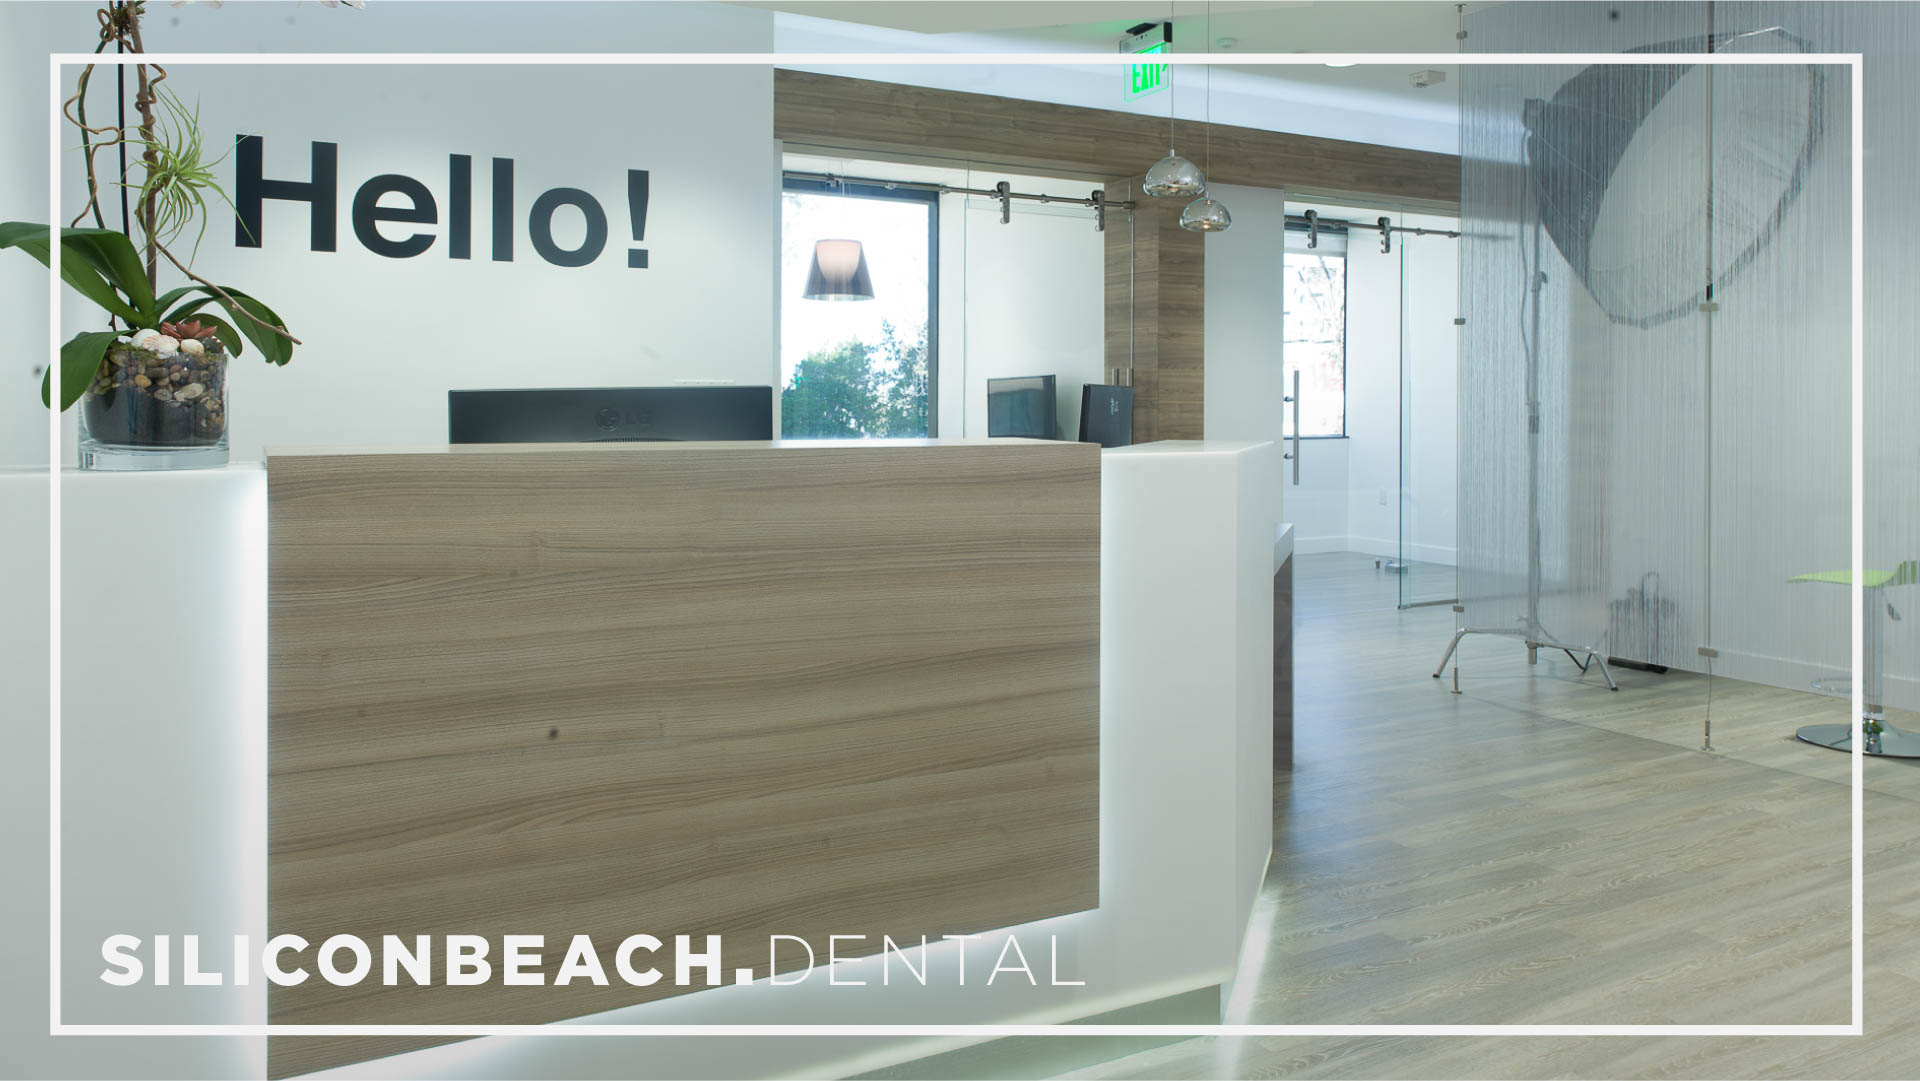 Silicon Beach Dental